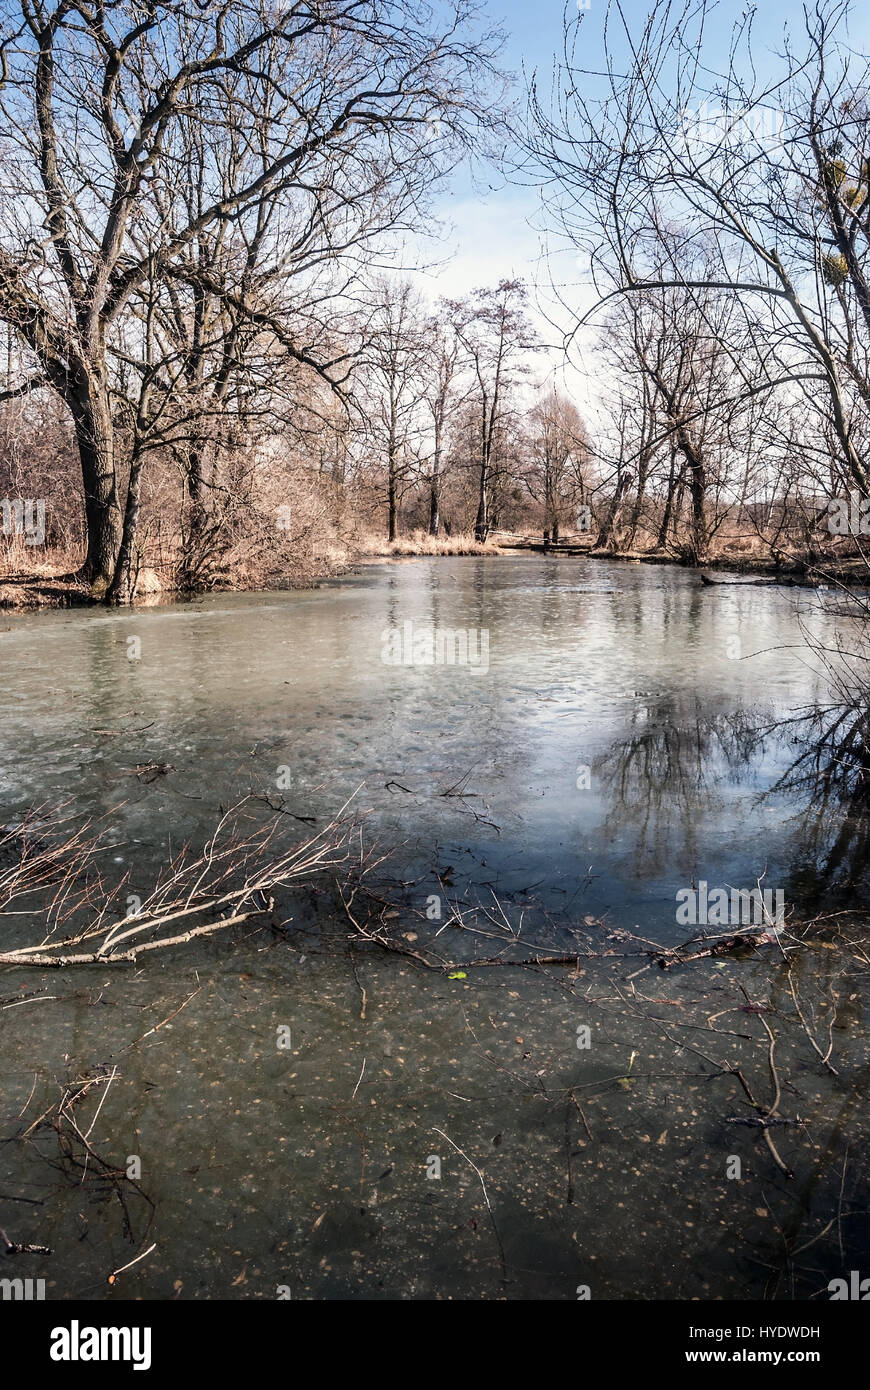 Slanaky congelés en partie le lac de la rivière avec des arbres et ciel bleu en début du printemps chko poodri près de studenka city en République tchèque Banque D'Images